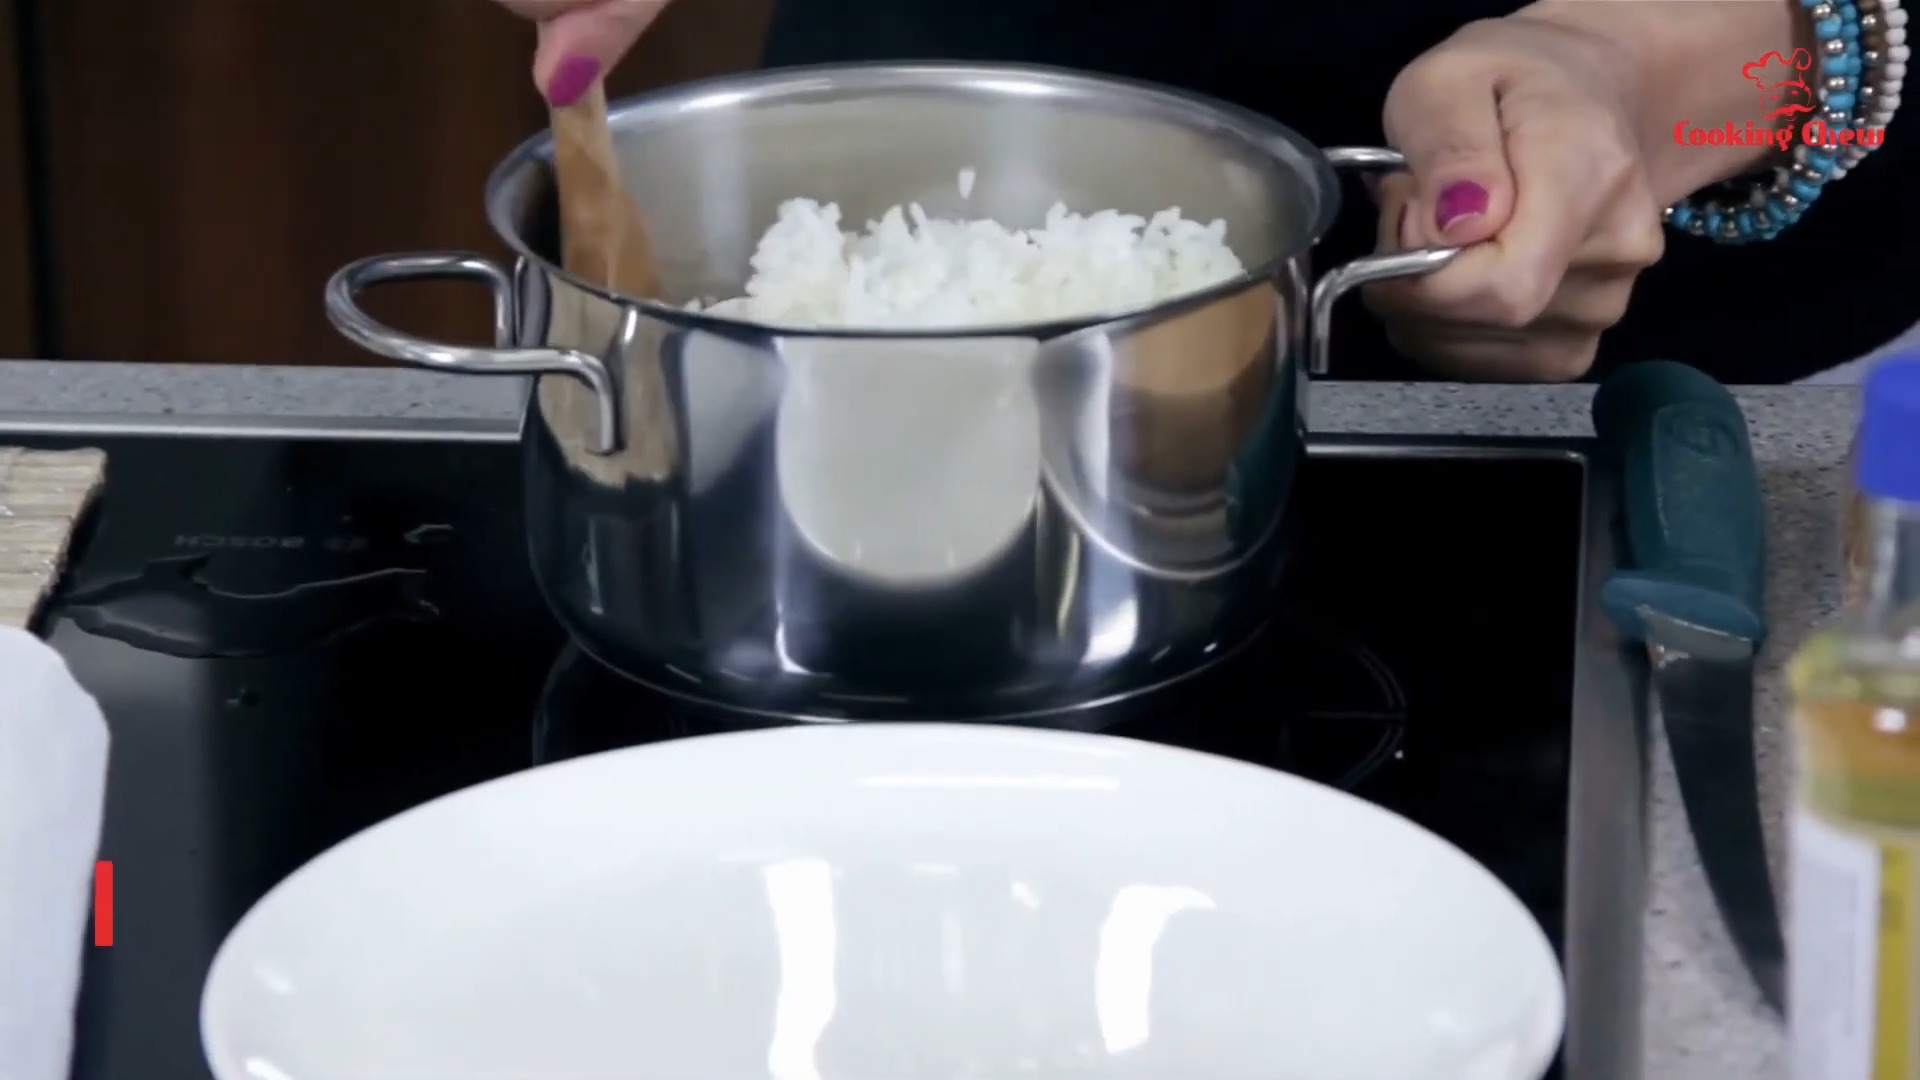 Reheating white rice